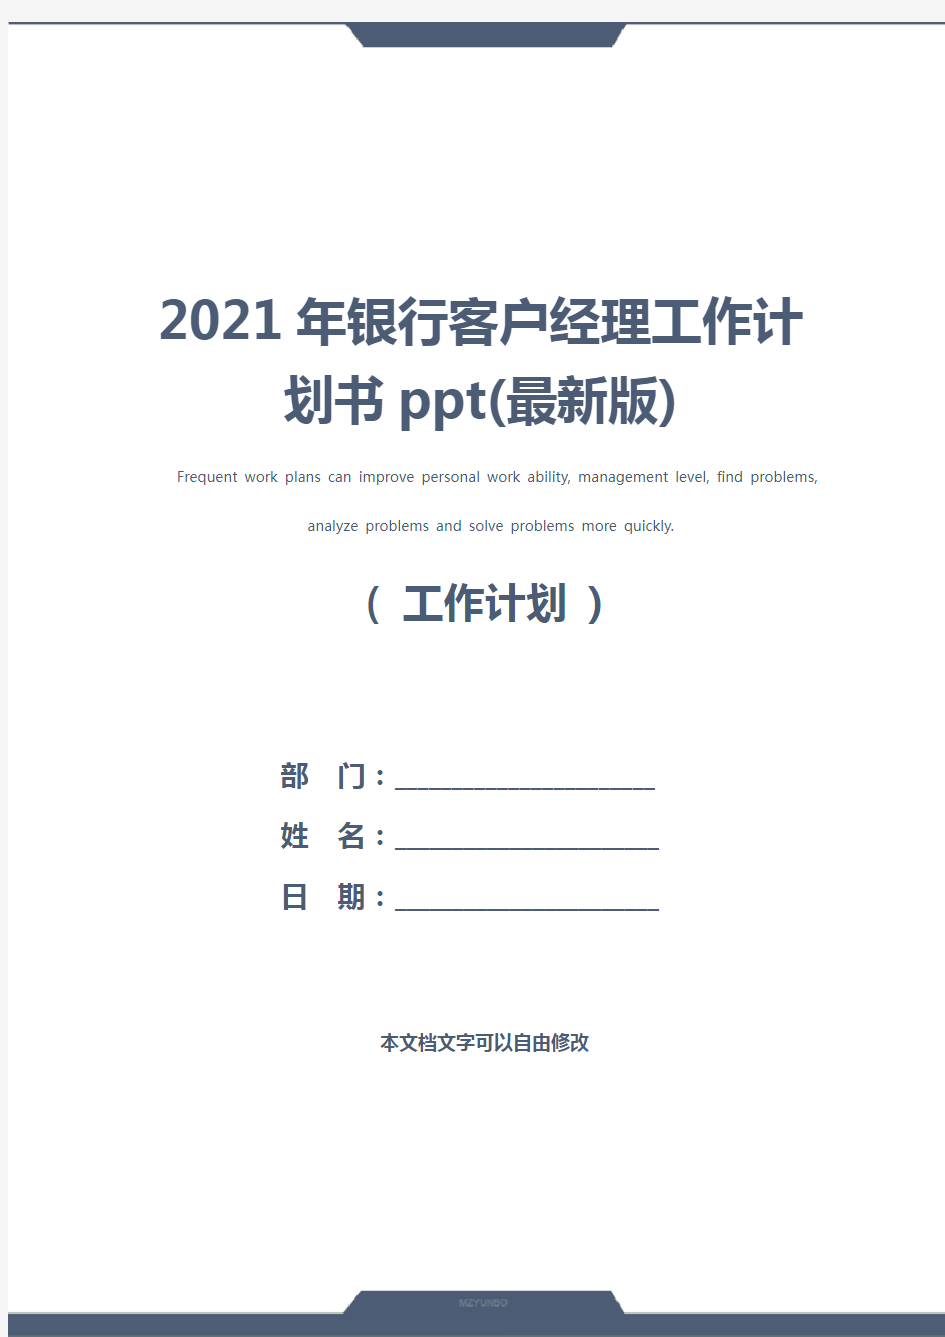 2021年银行客户经理工作计划书ppt(最新版)